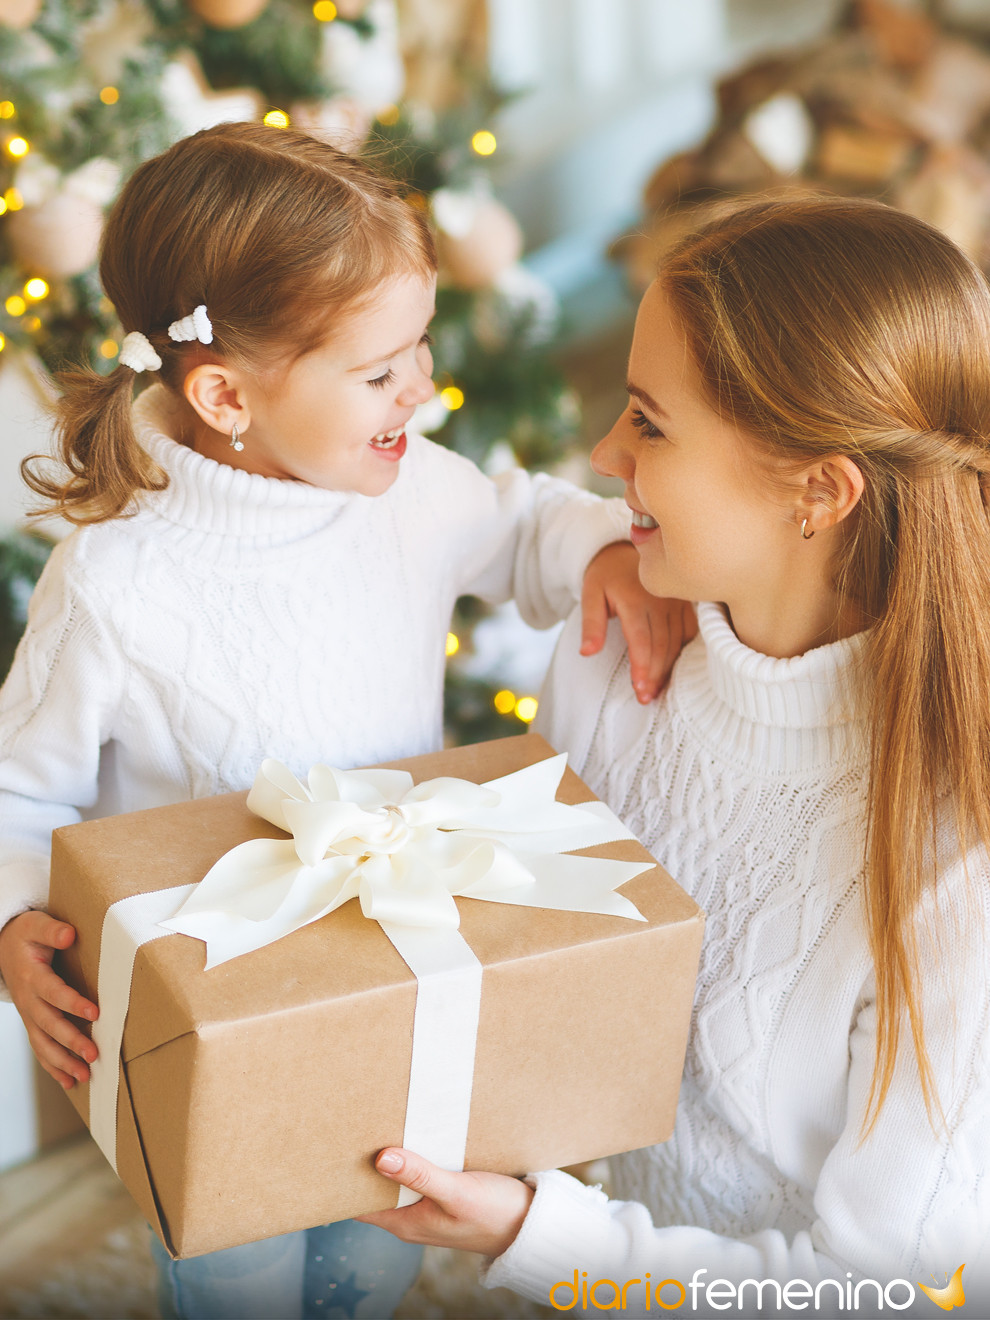 Navidad: 20 ideas de regalos para distintos gustos, edades y